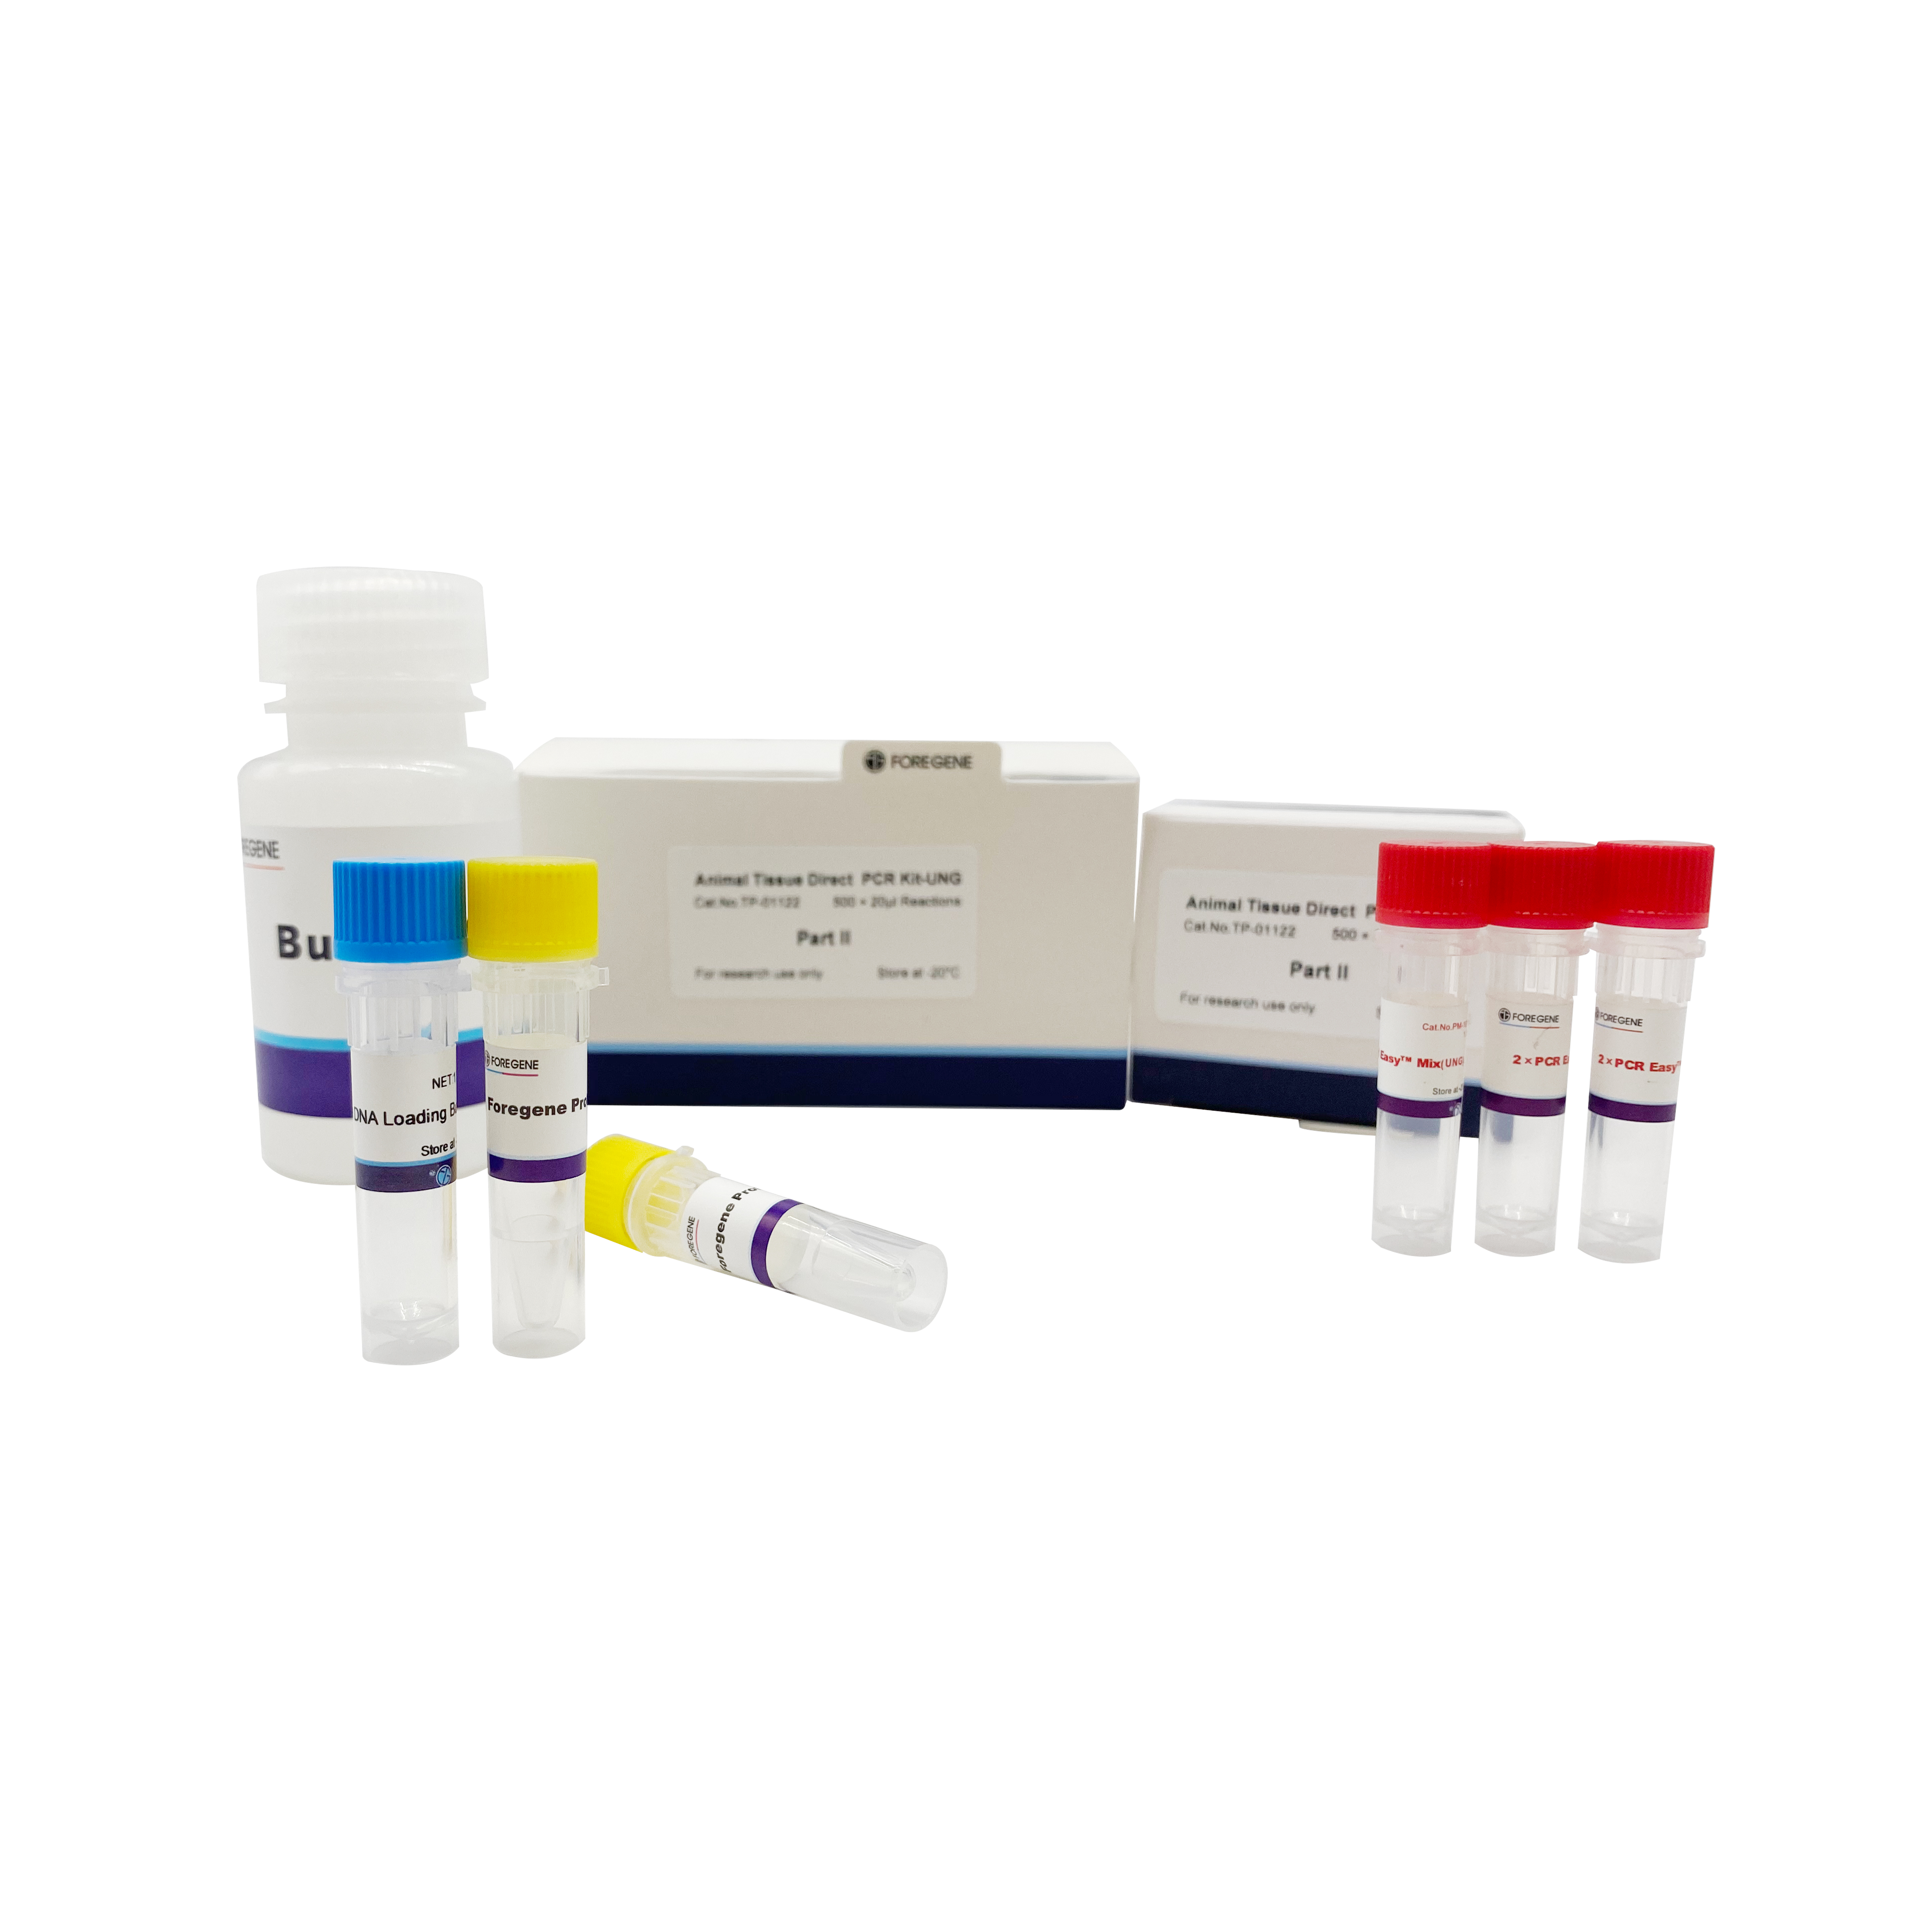 I-Animal Tissue Direct PCR kit-UNG(Ngaphandle kwe-DNA Extraction)